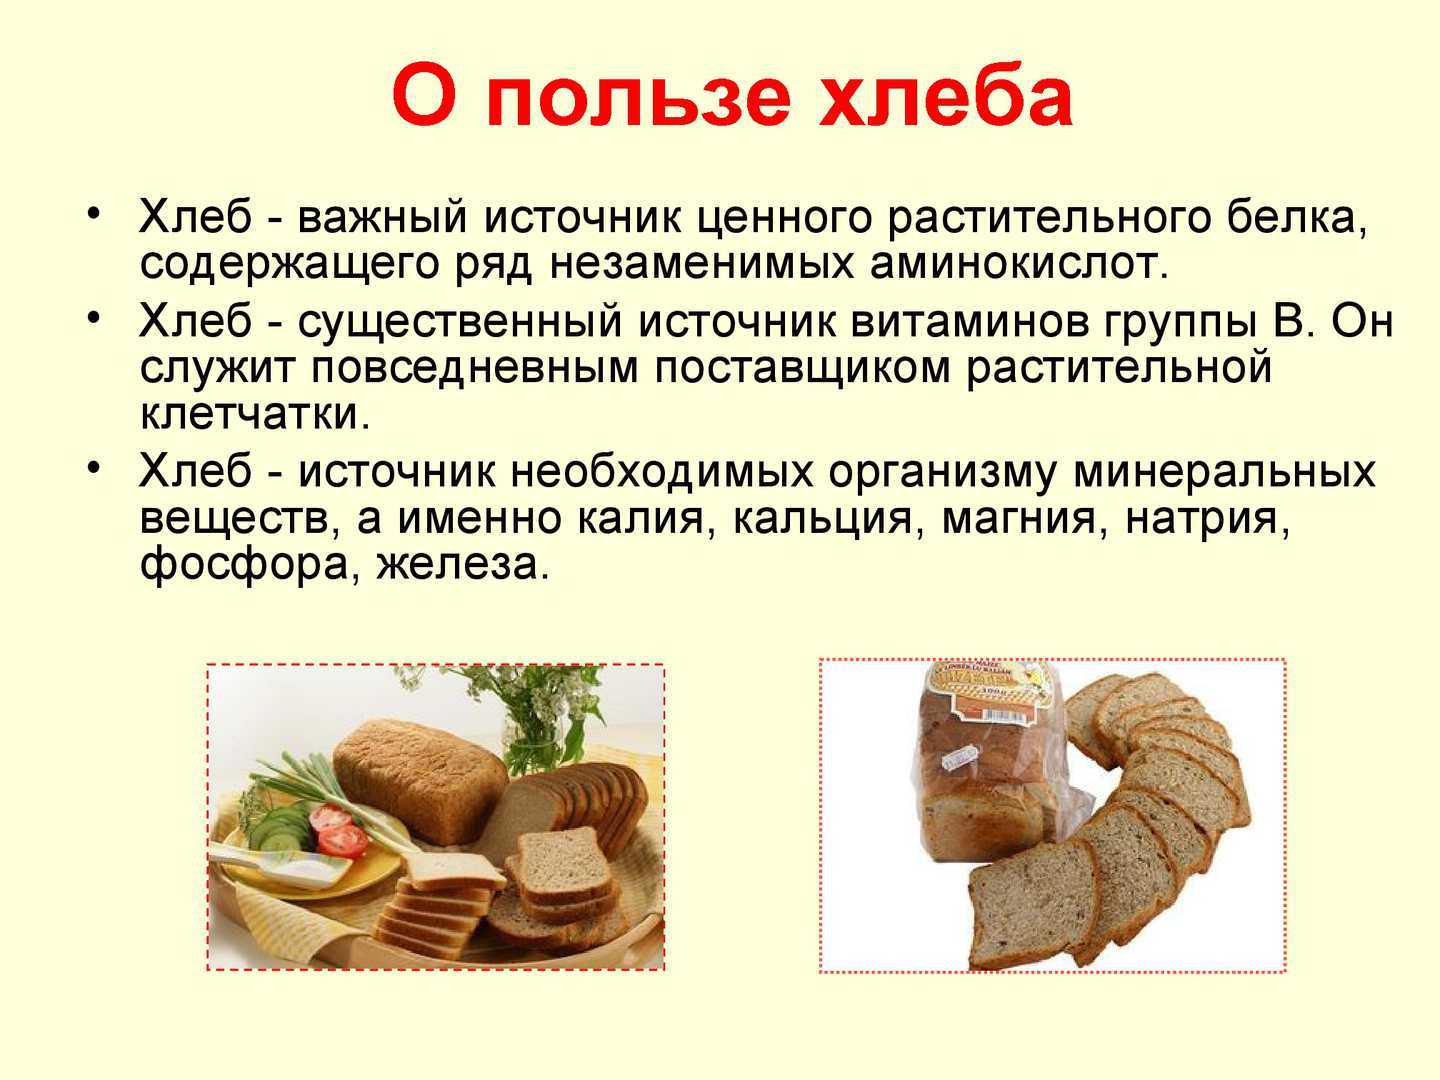 Насколько полезен ржаной хлеб и насколько вреден белый? :: polismed.com